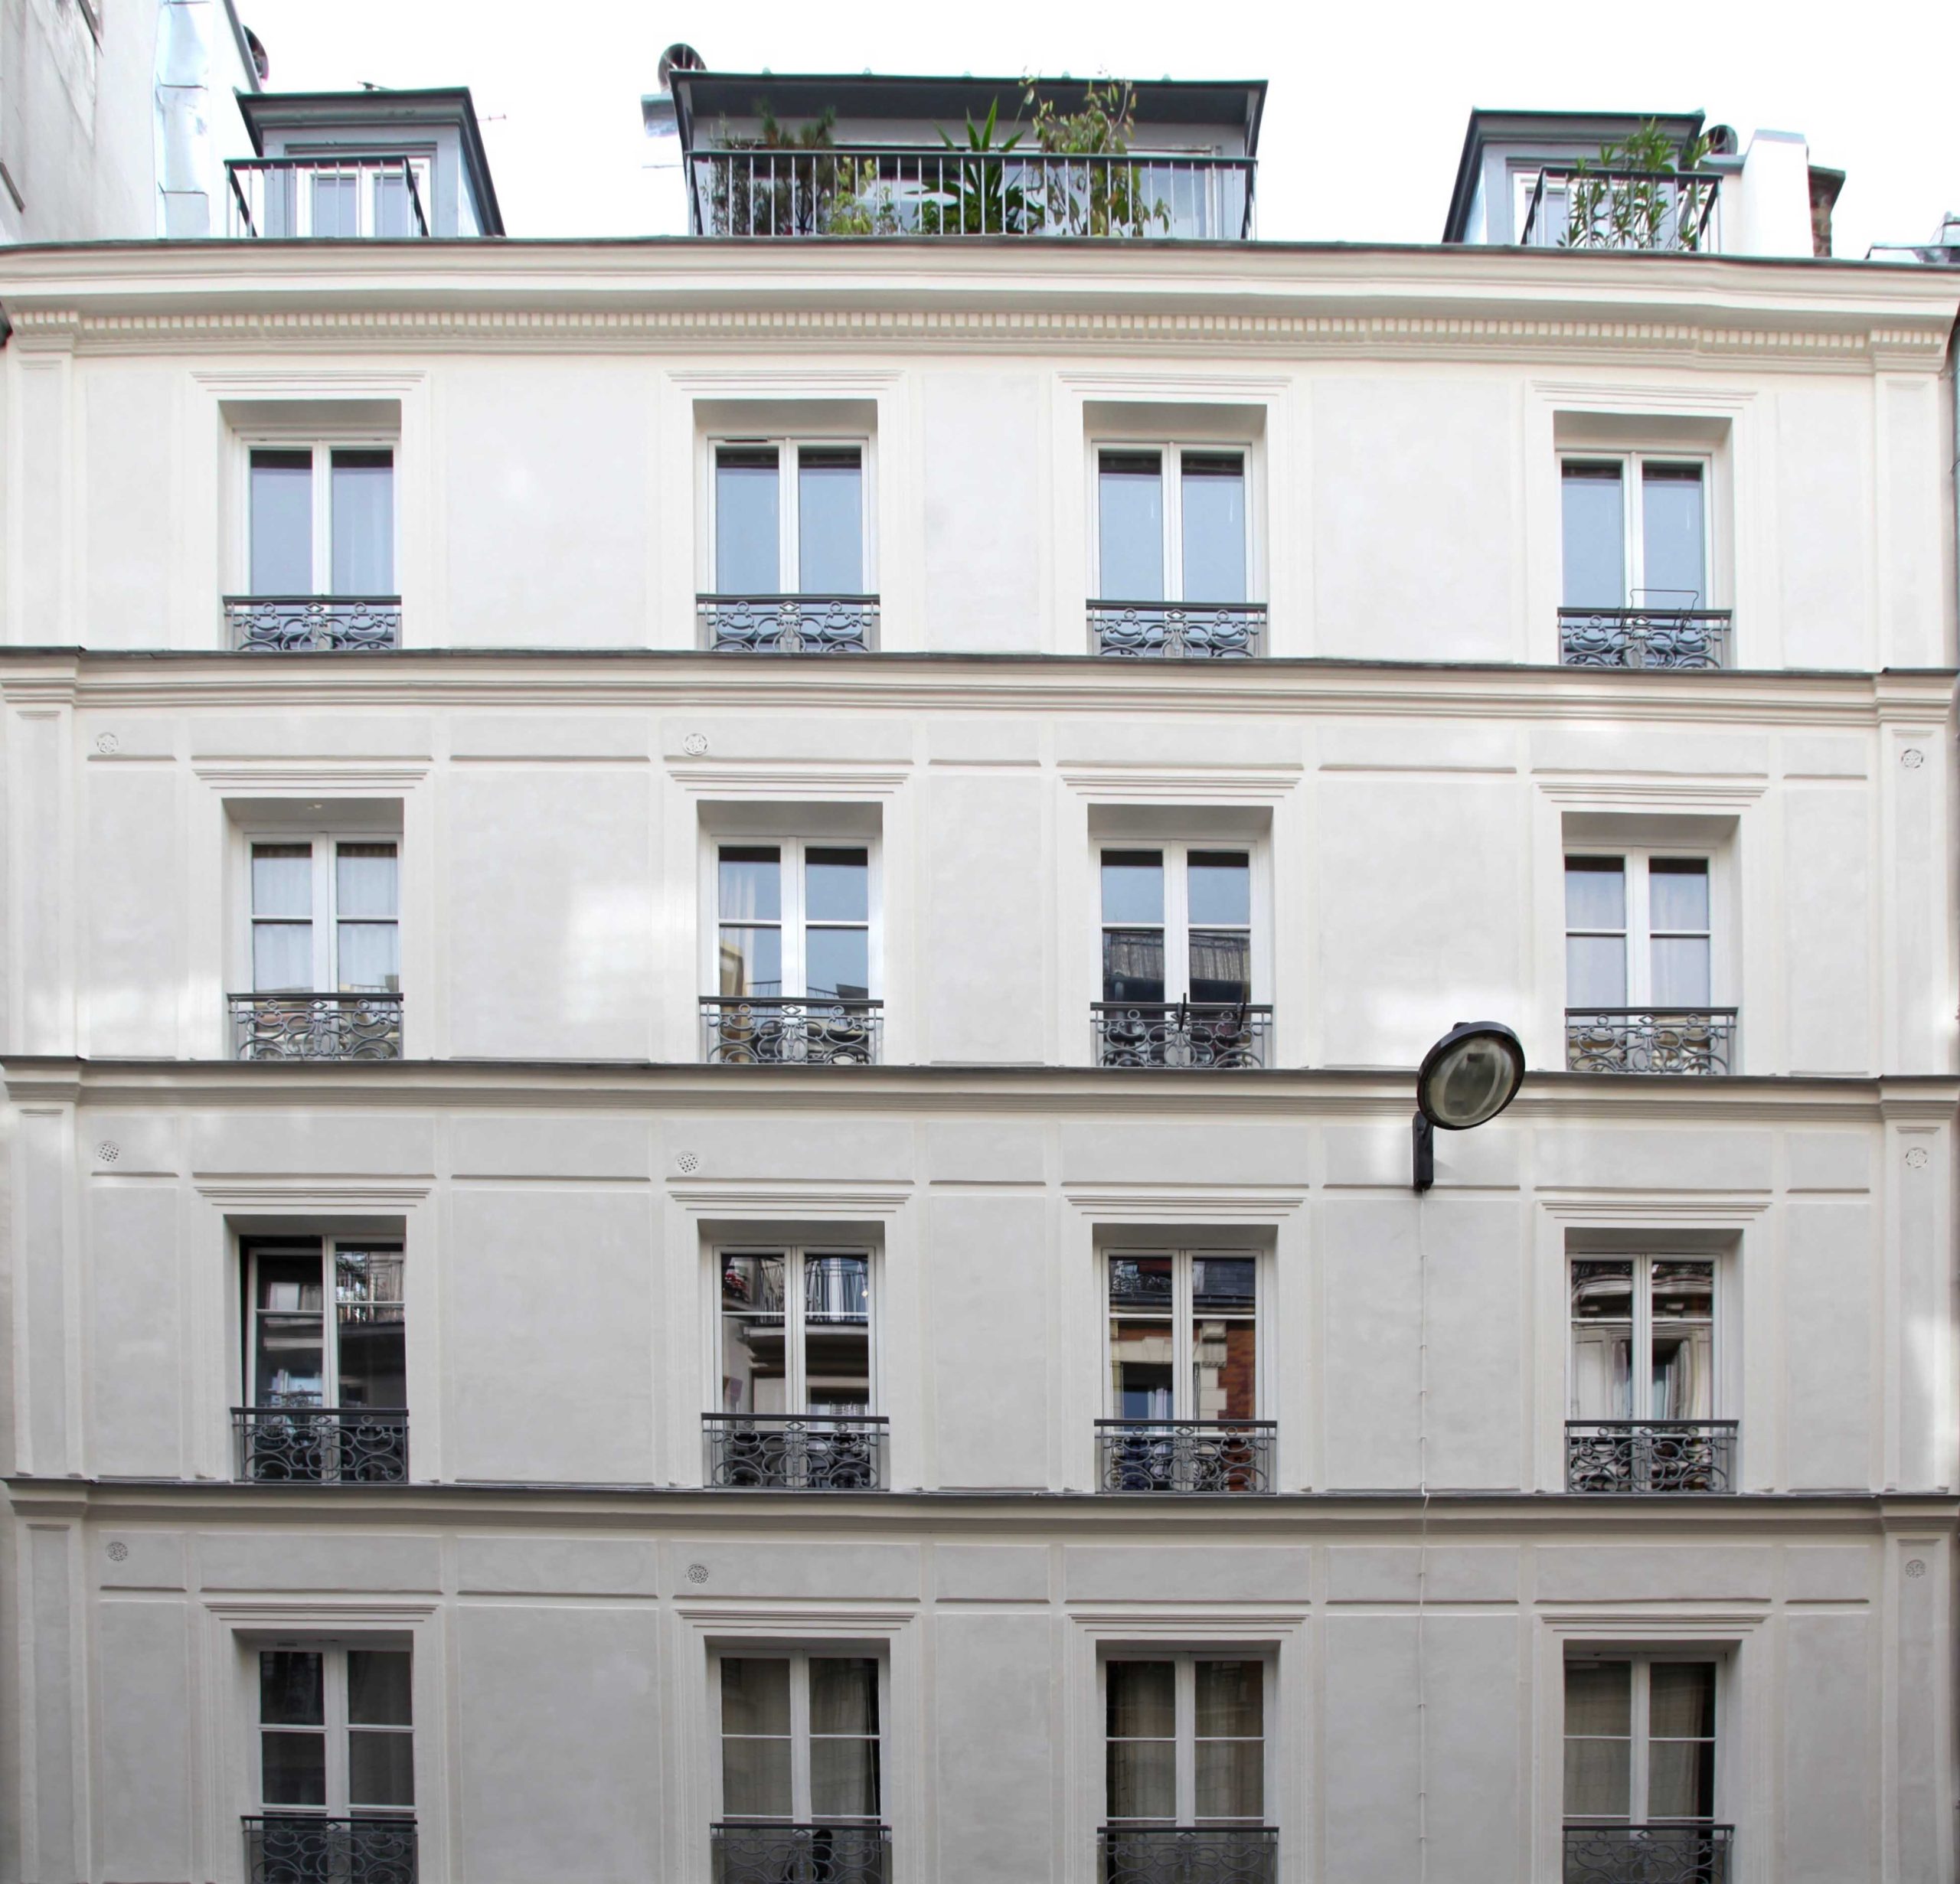 11 rue Vavin 75006, Paris, Battistelli architectes, ravalement façade rue, vue d'ensemble